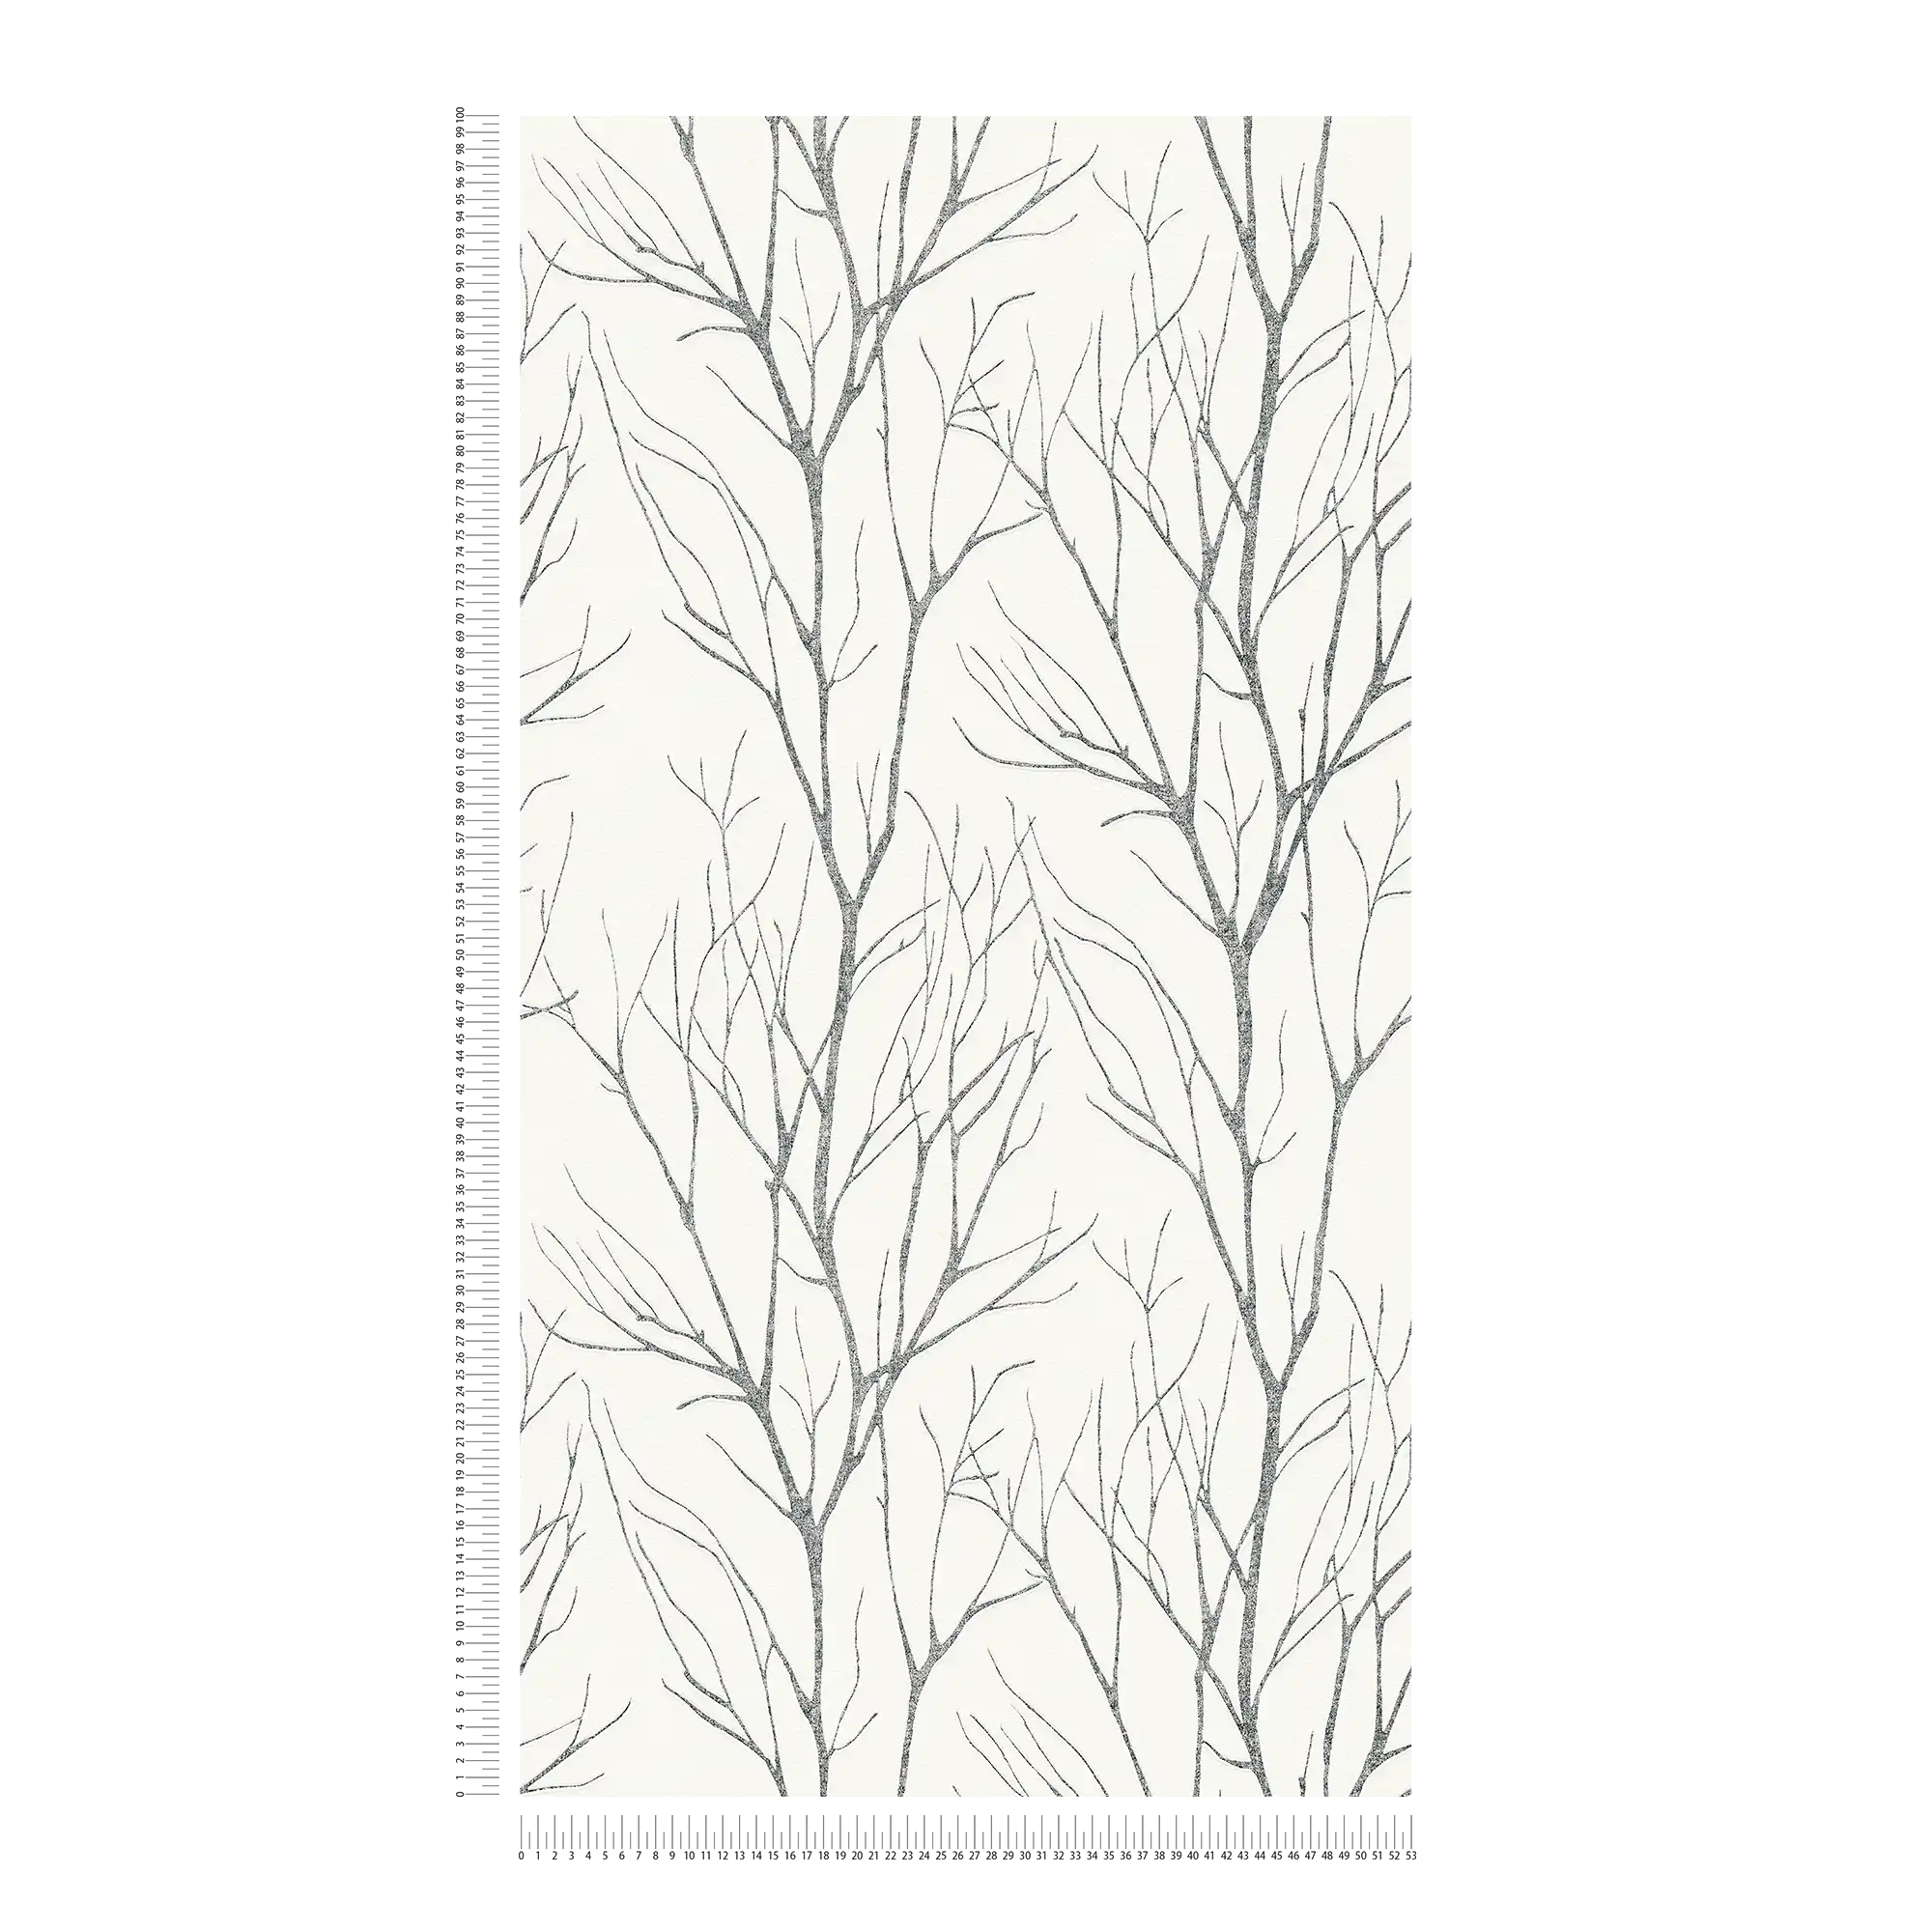             Papel pintado no tejido con motivo de árbol y efecto metálico - gris, negro, blanco
        